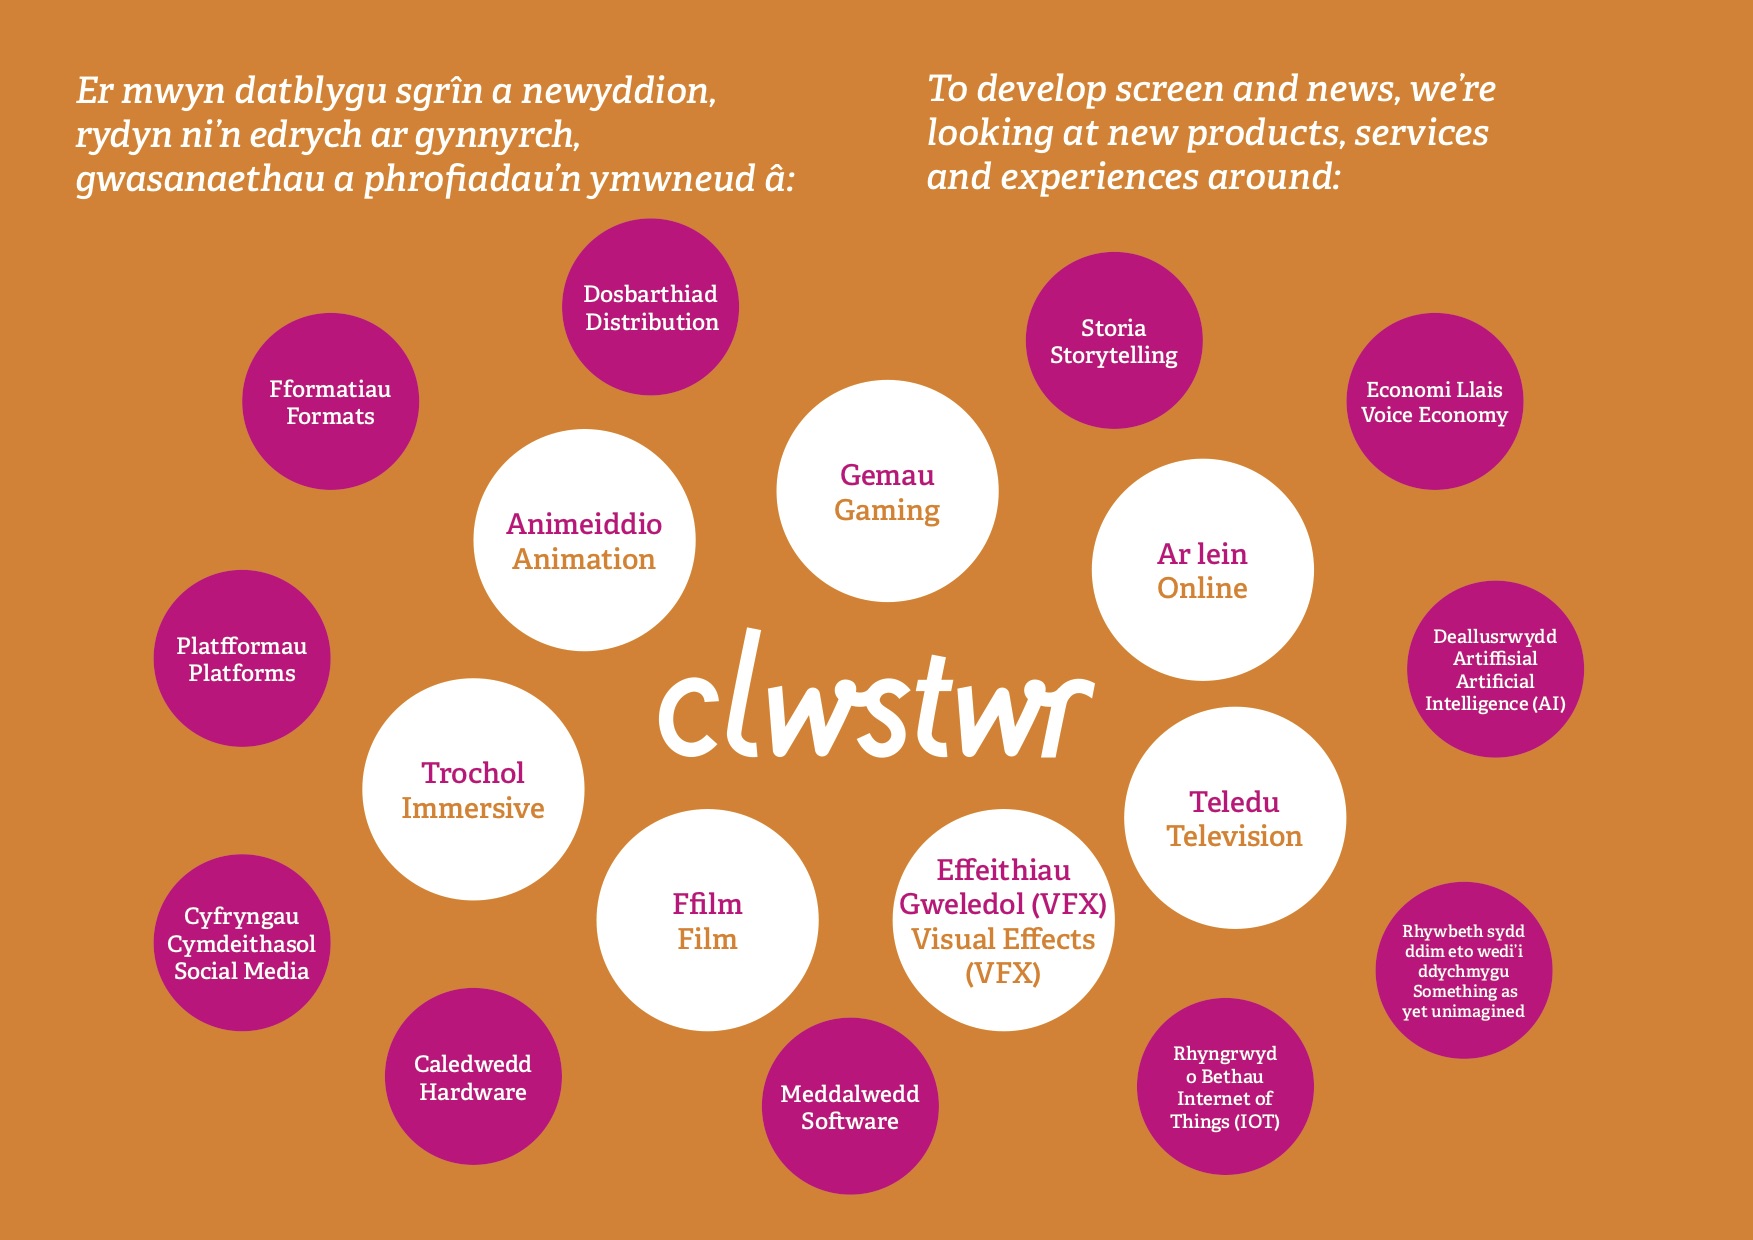 Clwstwr - where ideas thrive through